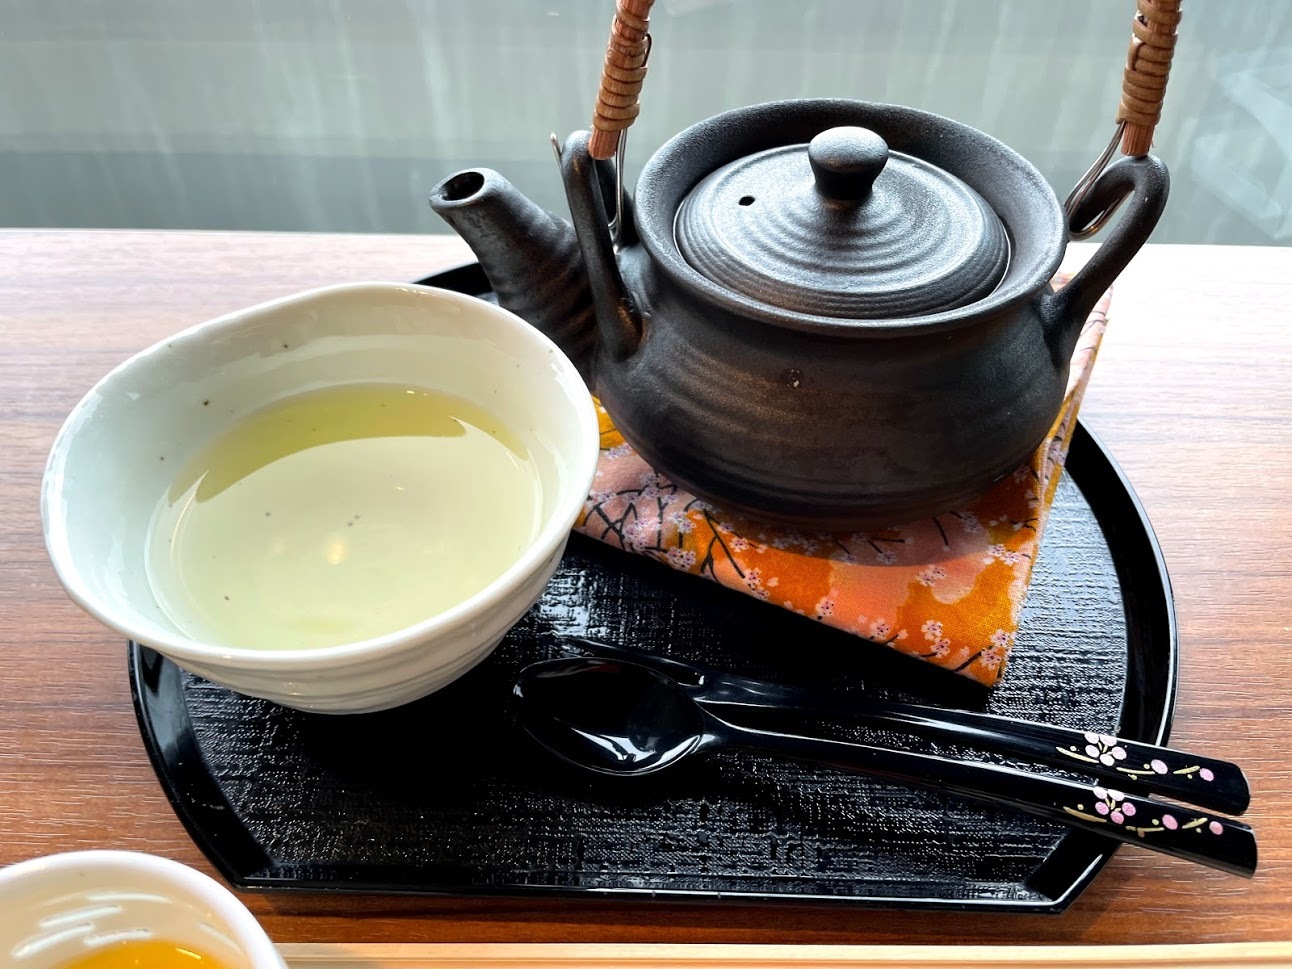 日本茶をいろいろ楽しめるのもよいですね